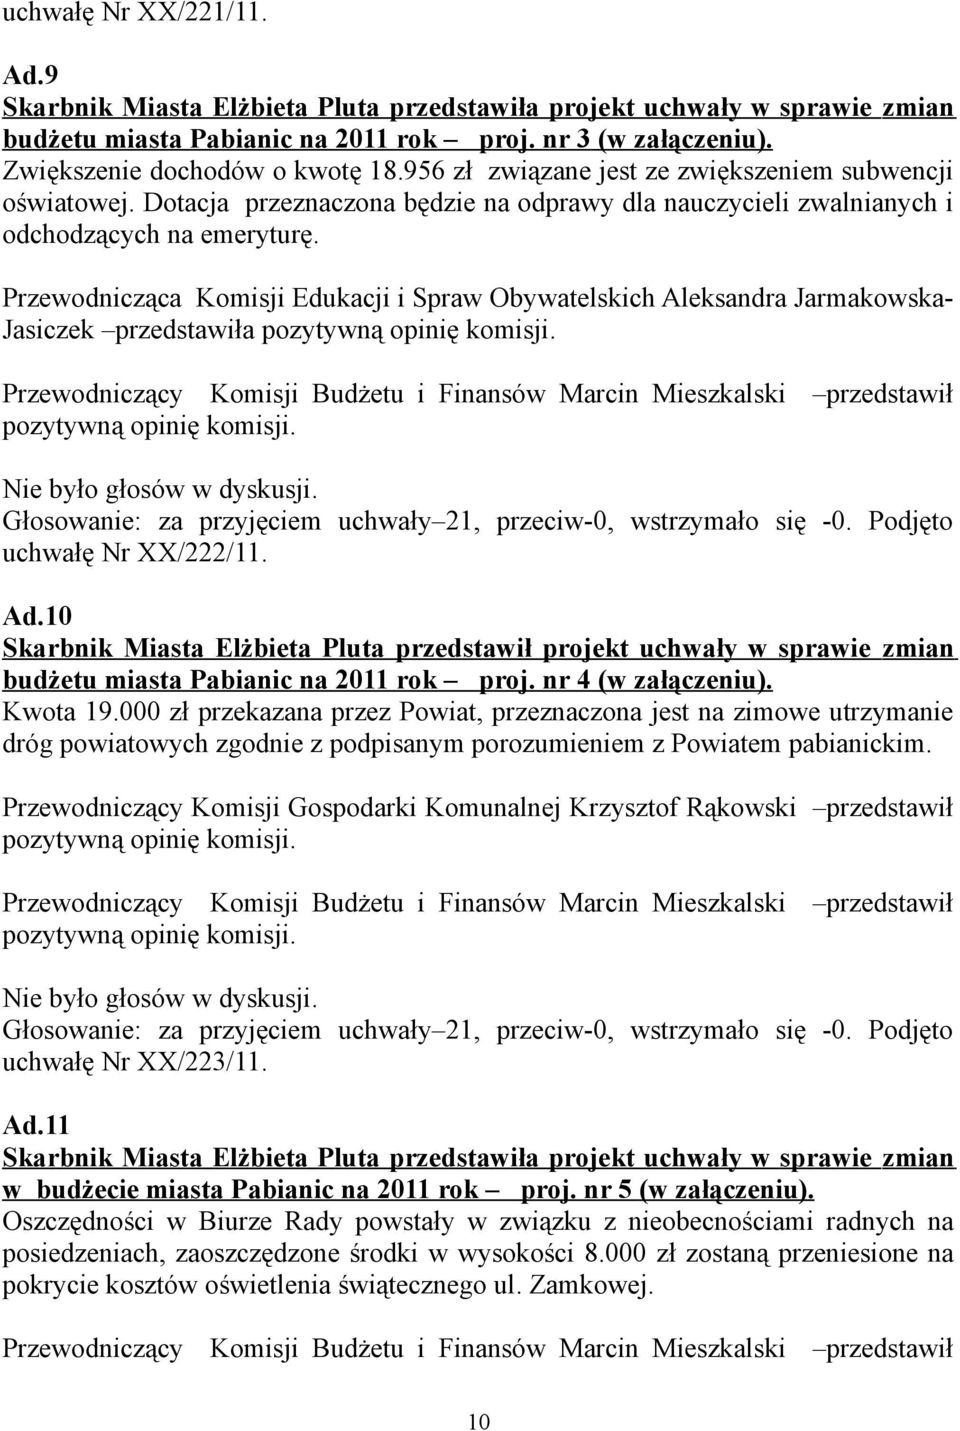 Przewodnicząca Komisji Edukacji i Spraw Obywatelskich Aleksandra Jarmakowska- Jasiczek przedstawiła Głosowanie: za przyjęciem uchwały 21, przeciw-0, wstrzymało się -0. Podjęto uchwałę Nr XX/222/11.